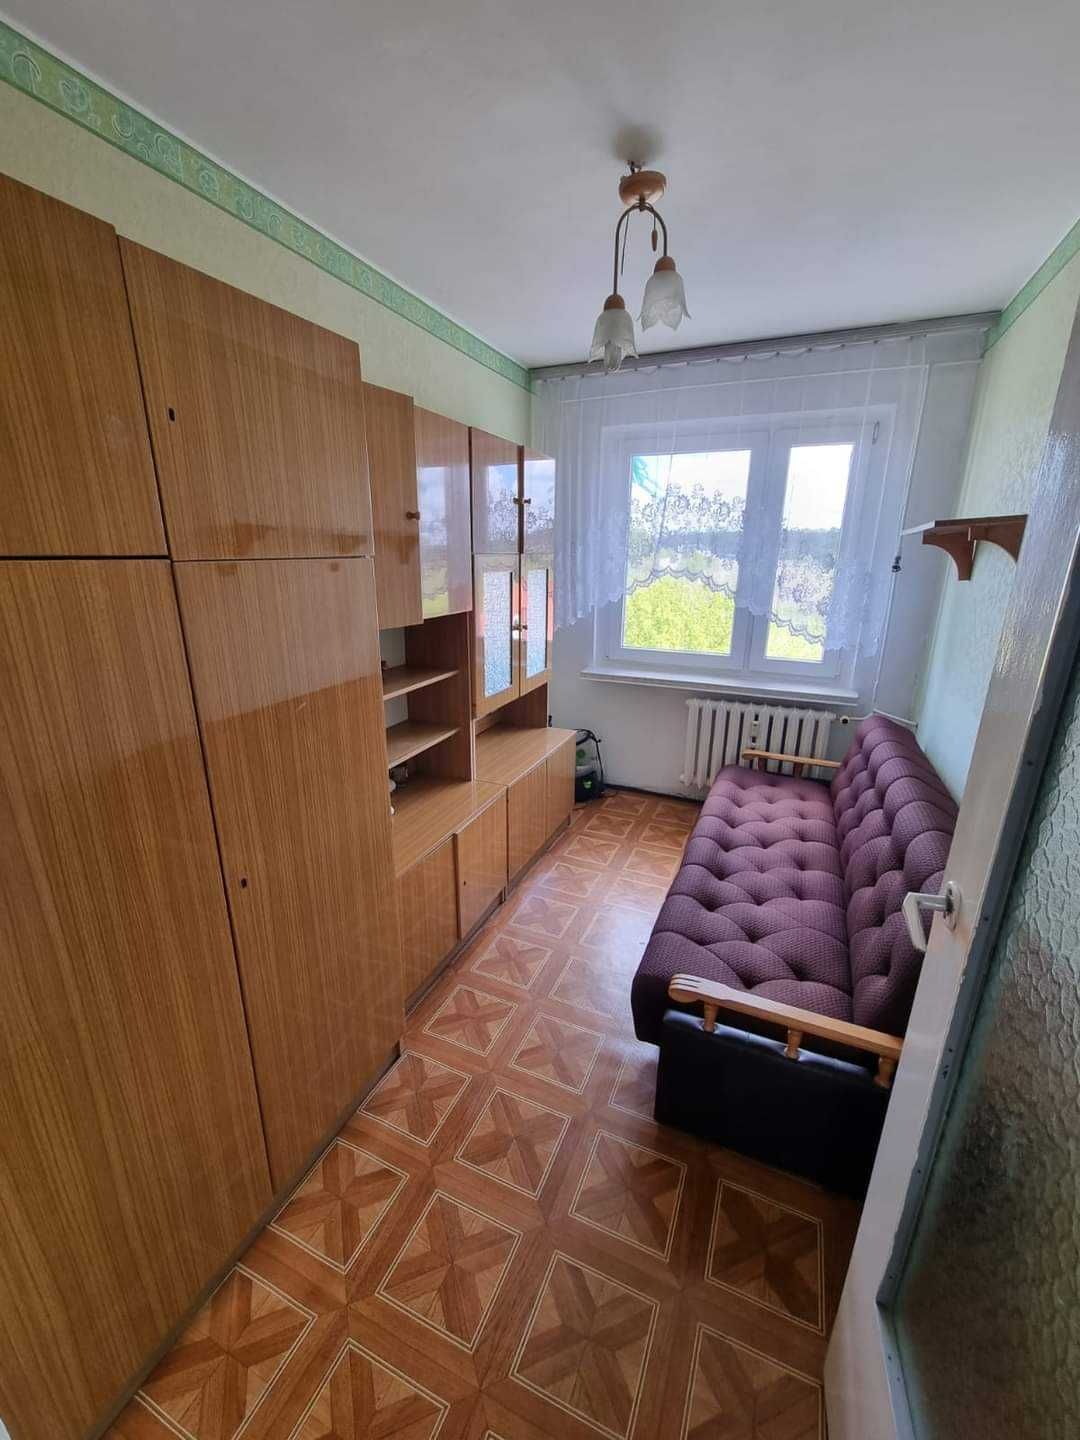 OKAZJA CENOWA 58 m2, 3 pokojowe mieszkanie ul. Dąbskiego w bloku